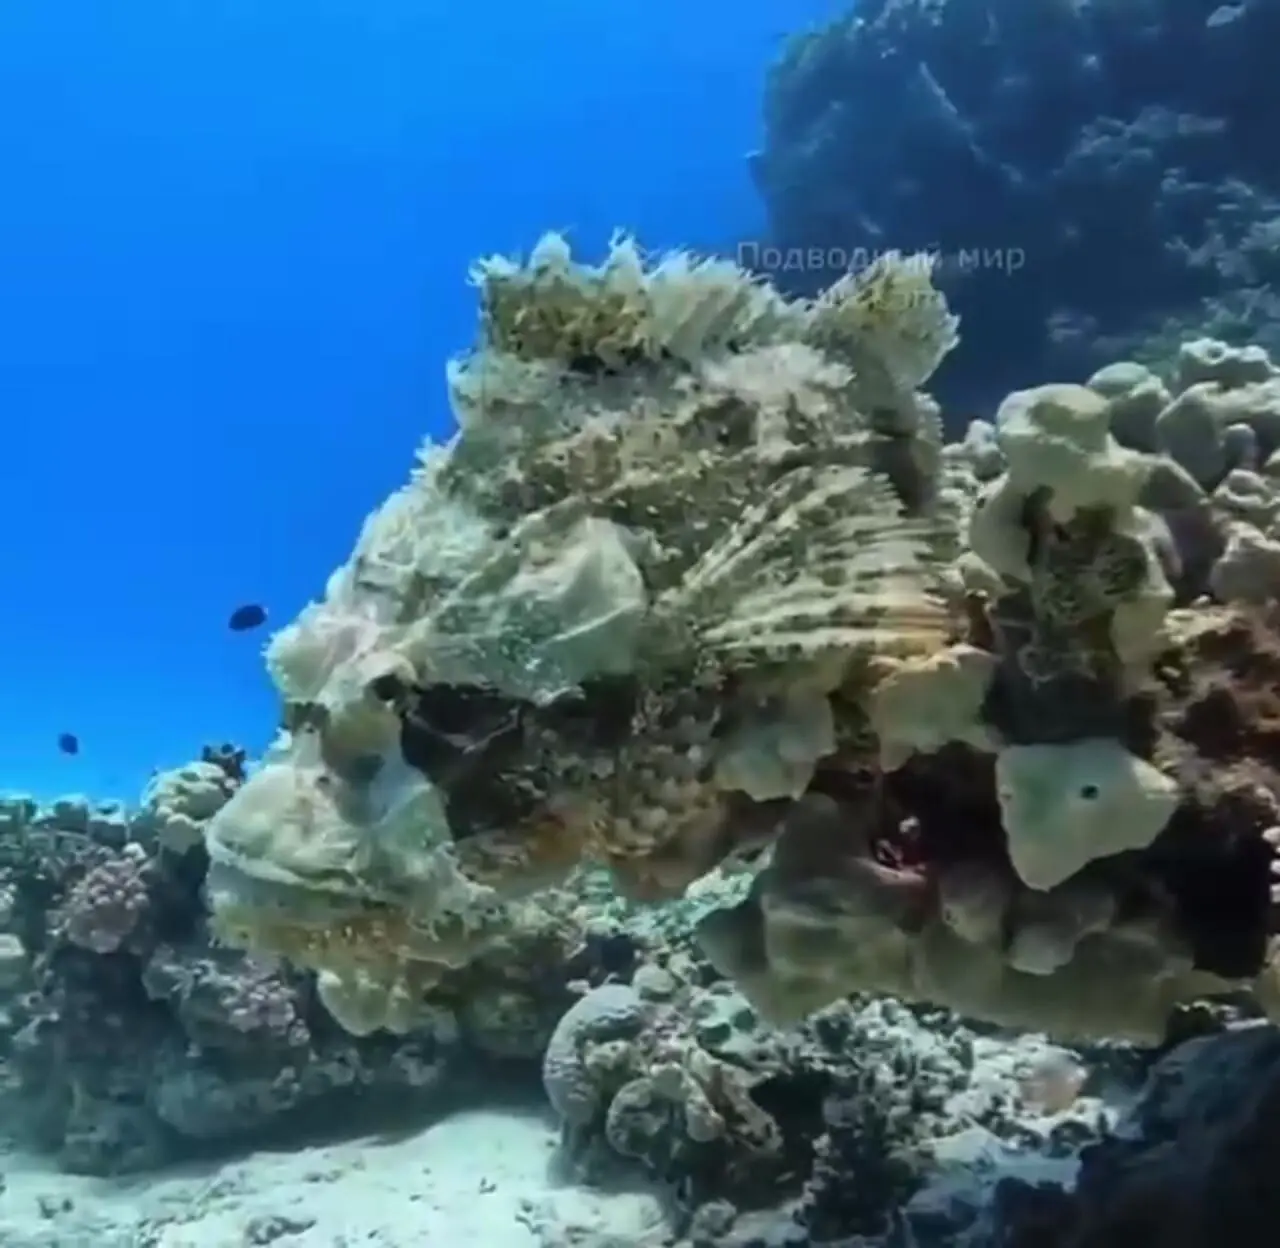 فیلم جالب از اعماق دریا با وجود عقرب ماهی